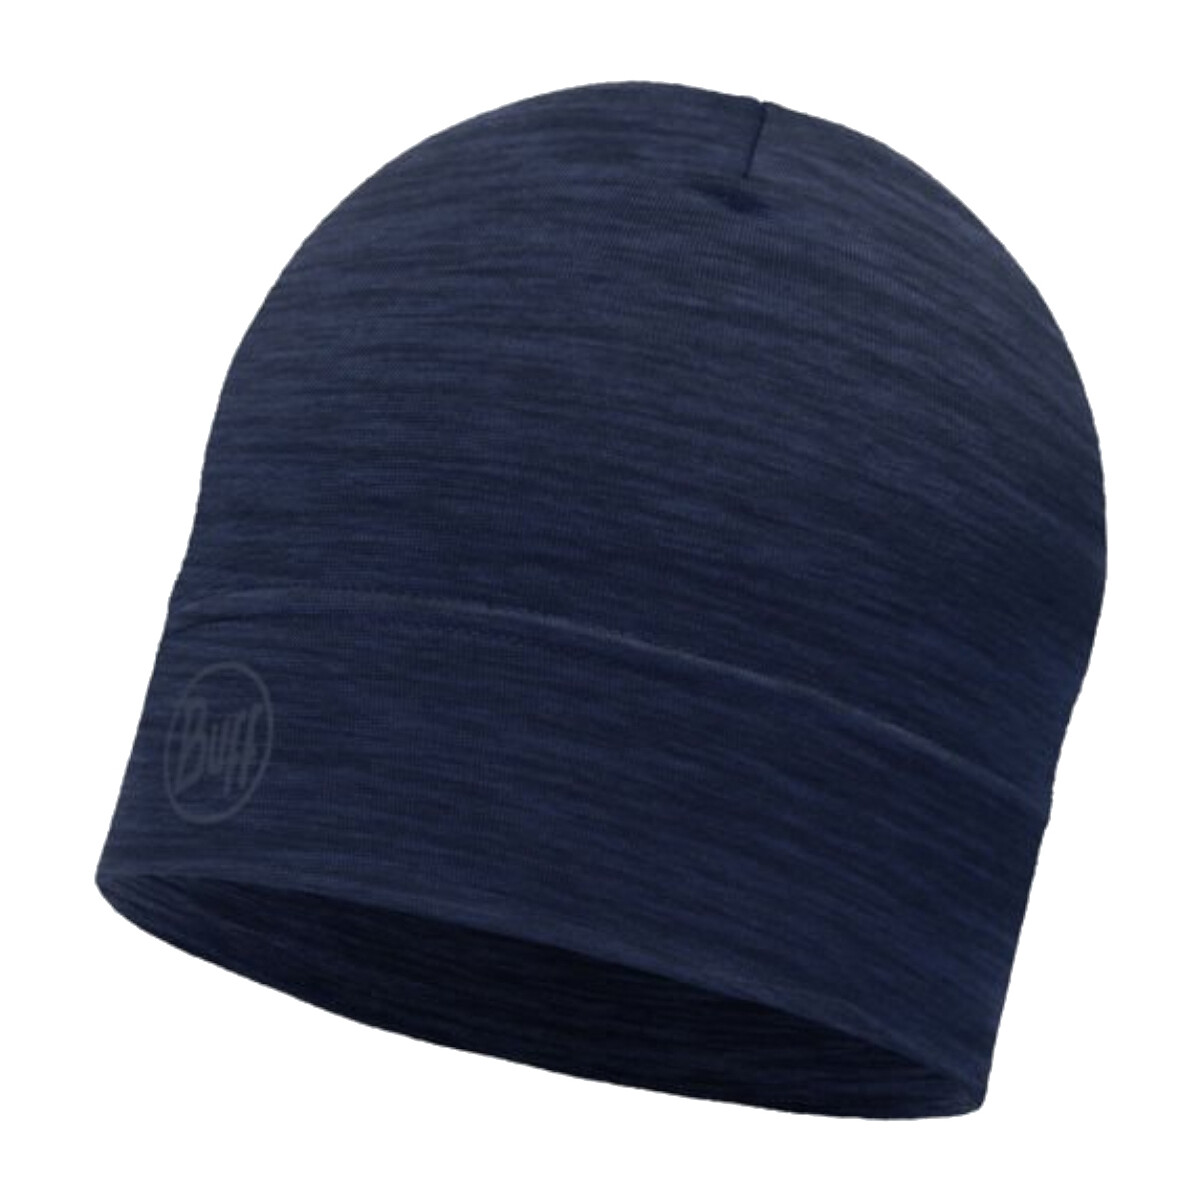 Textilní doplňky Čepice Buff Merino Lightweight Hat Beanie Modrá